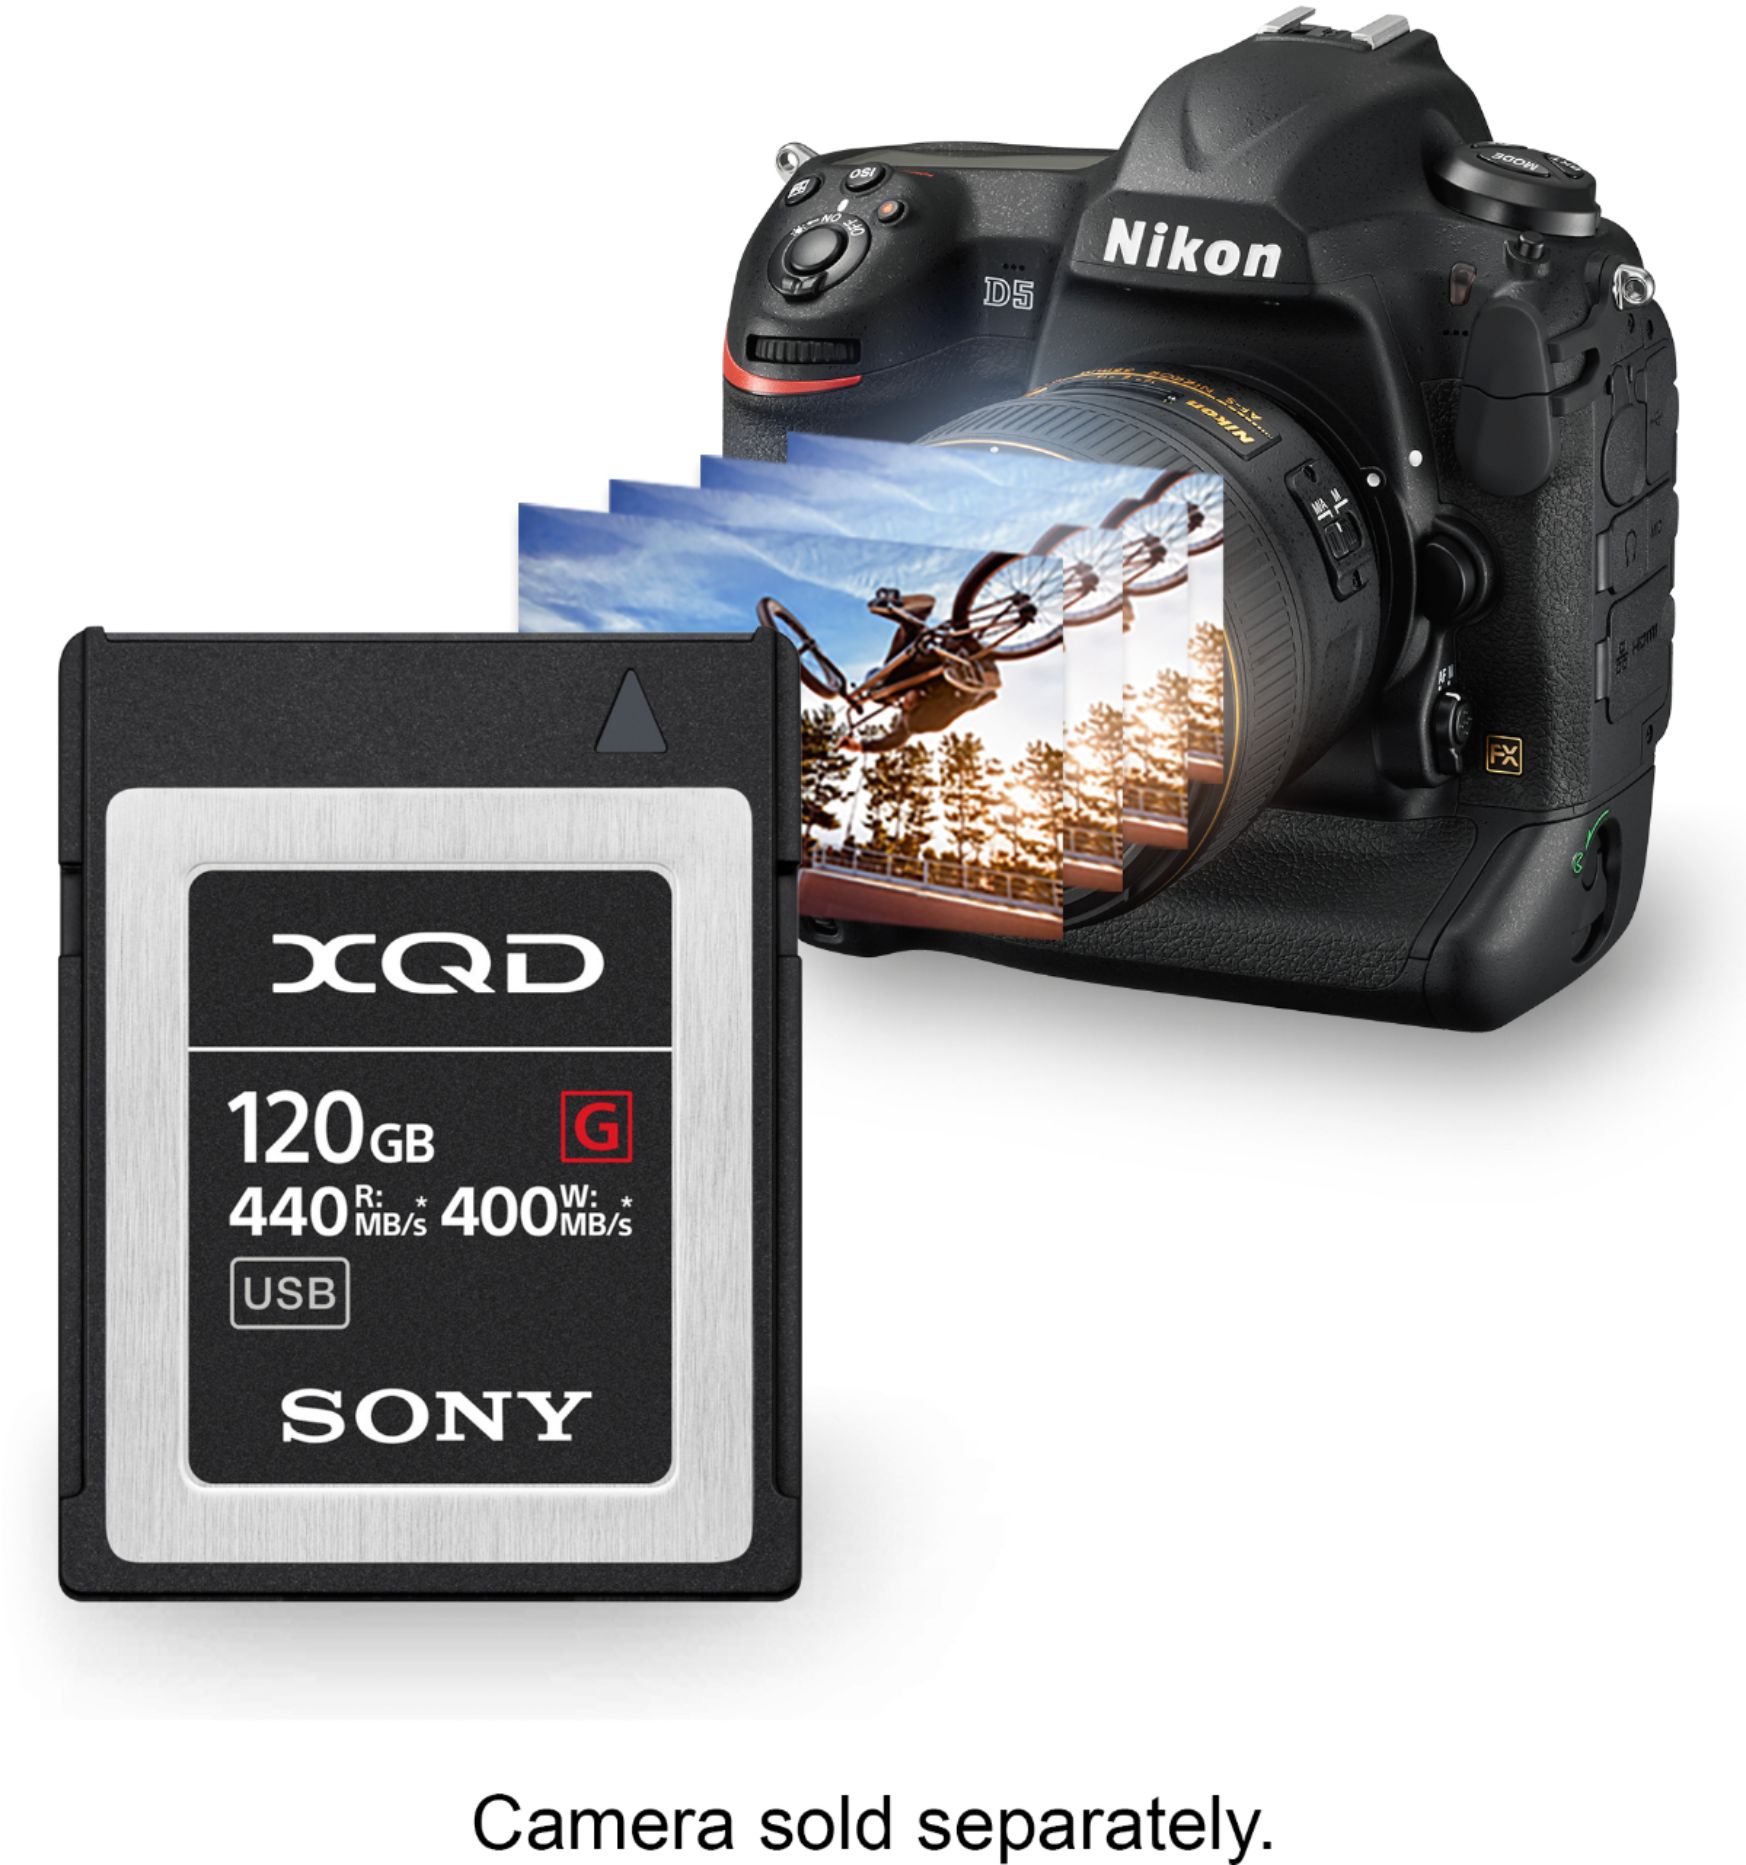 ソニー XQDメモリーカード 120GB QD-G120F